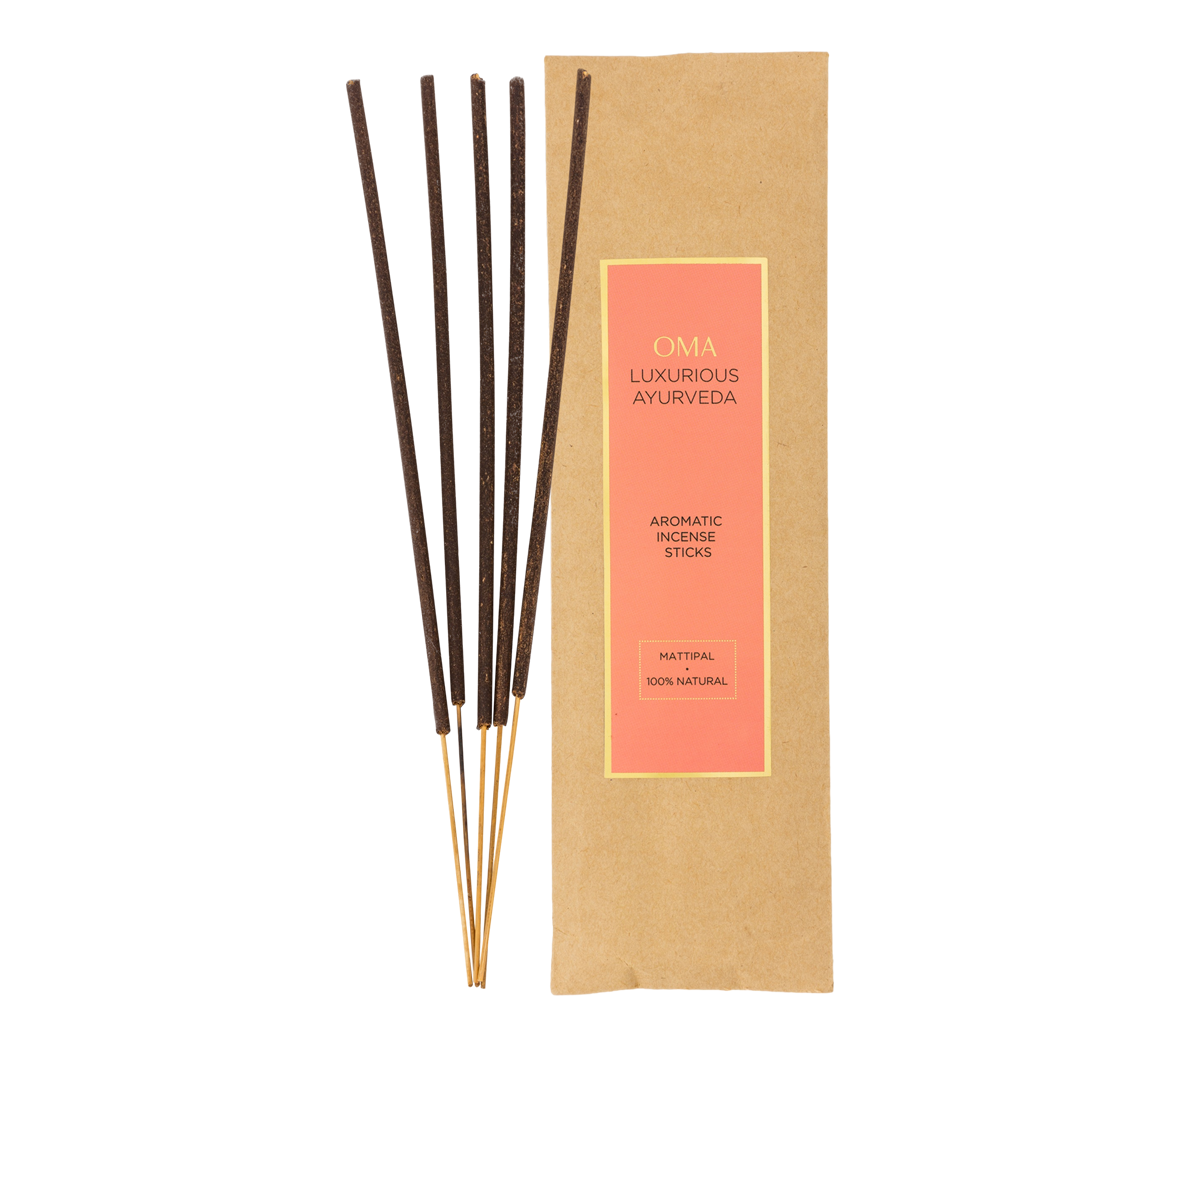 Mattipal Incense Stick Set of 50